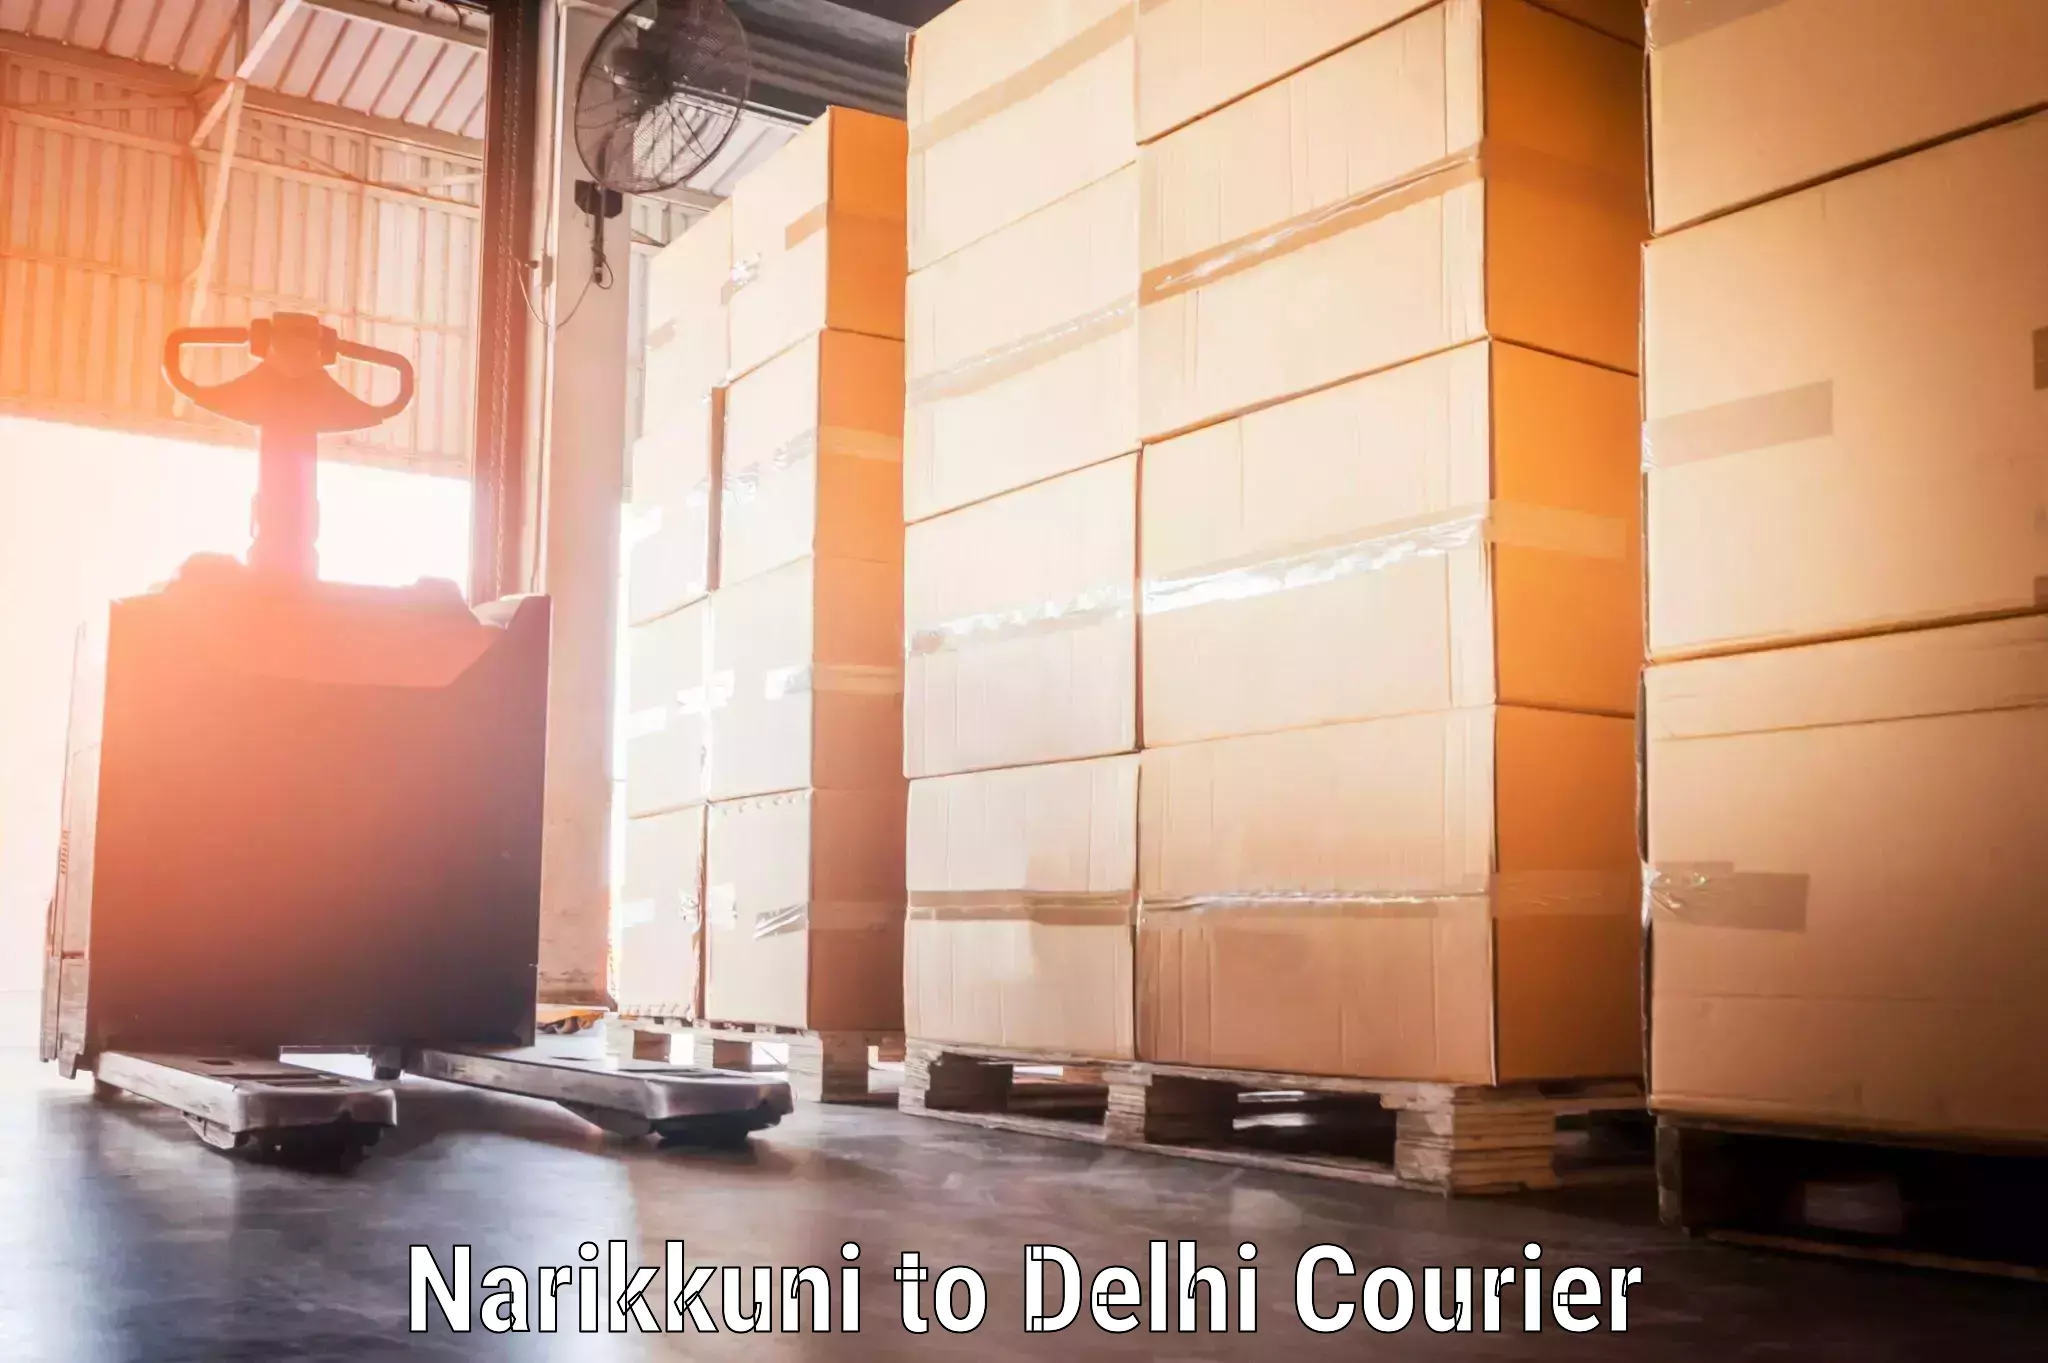 Baggage shipping optimization Narikkuni to Delhi